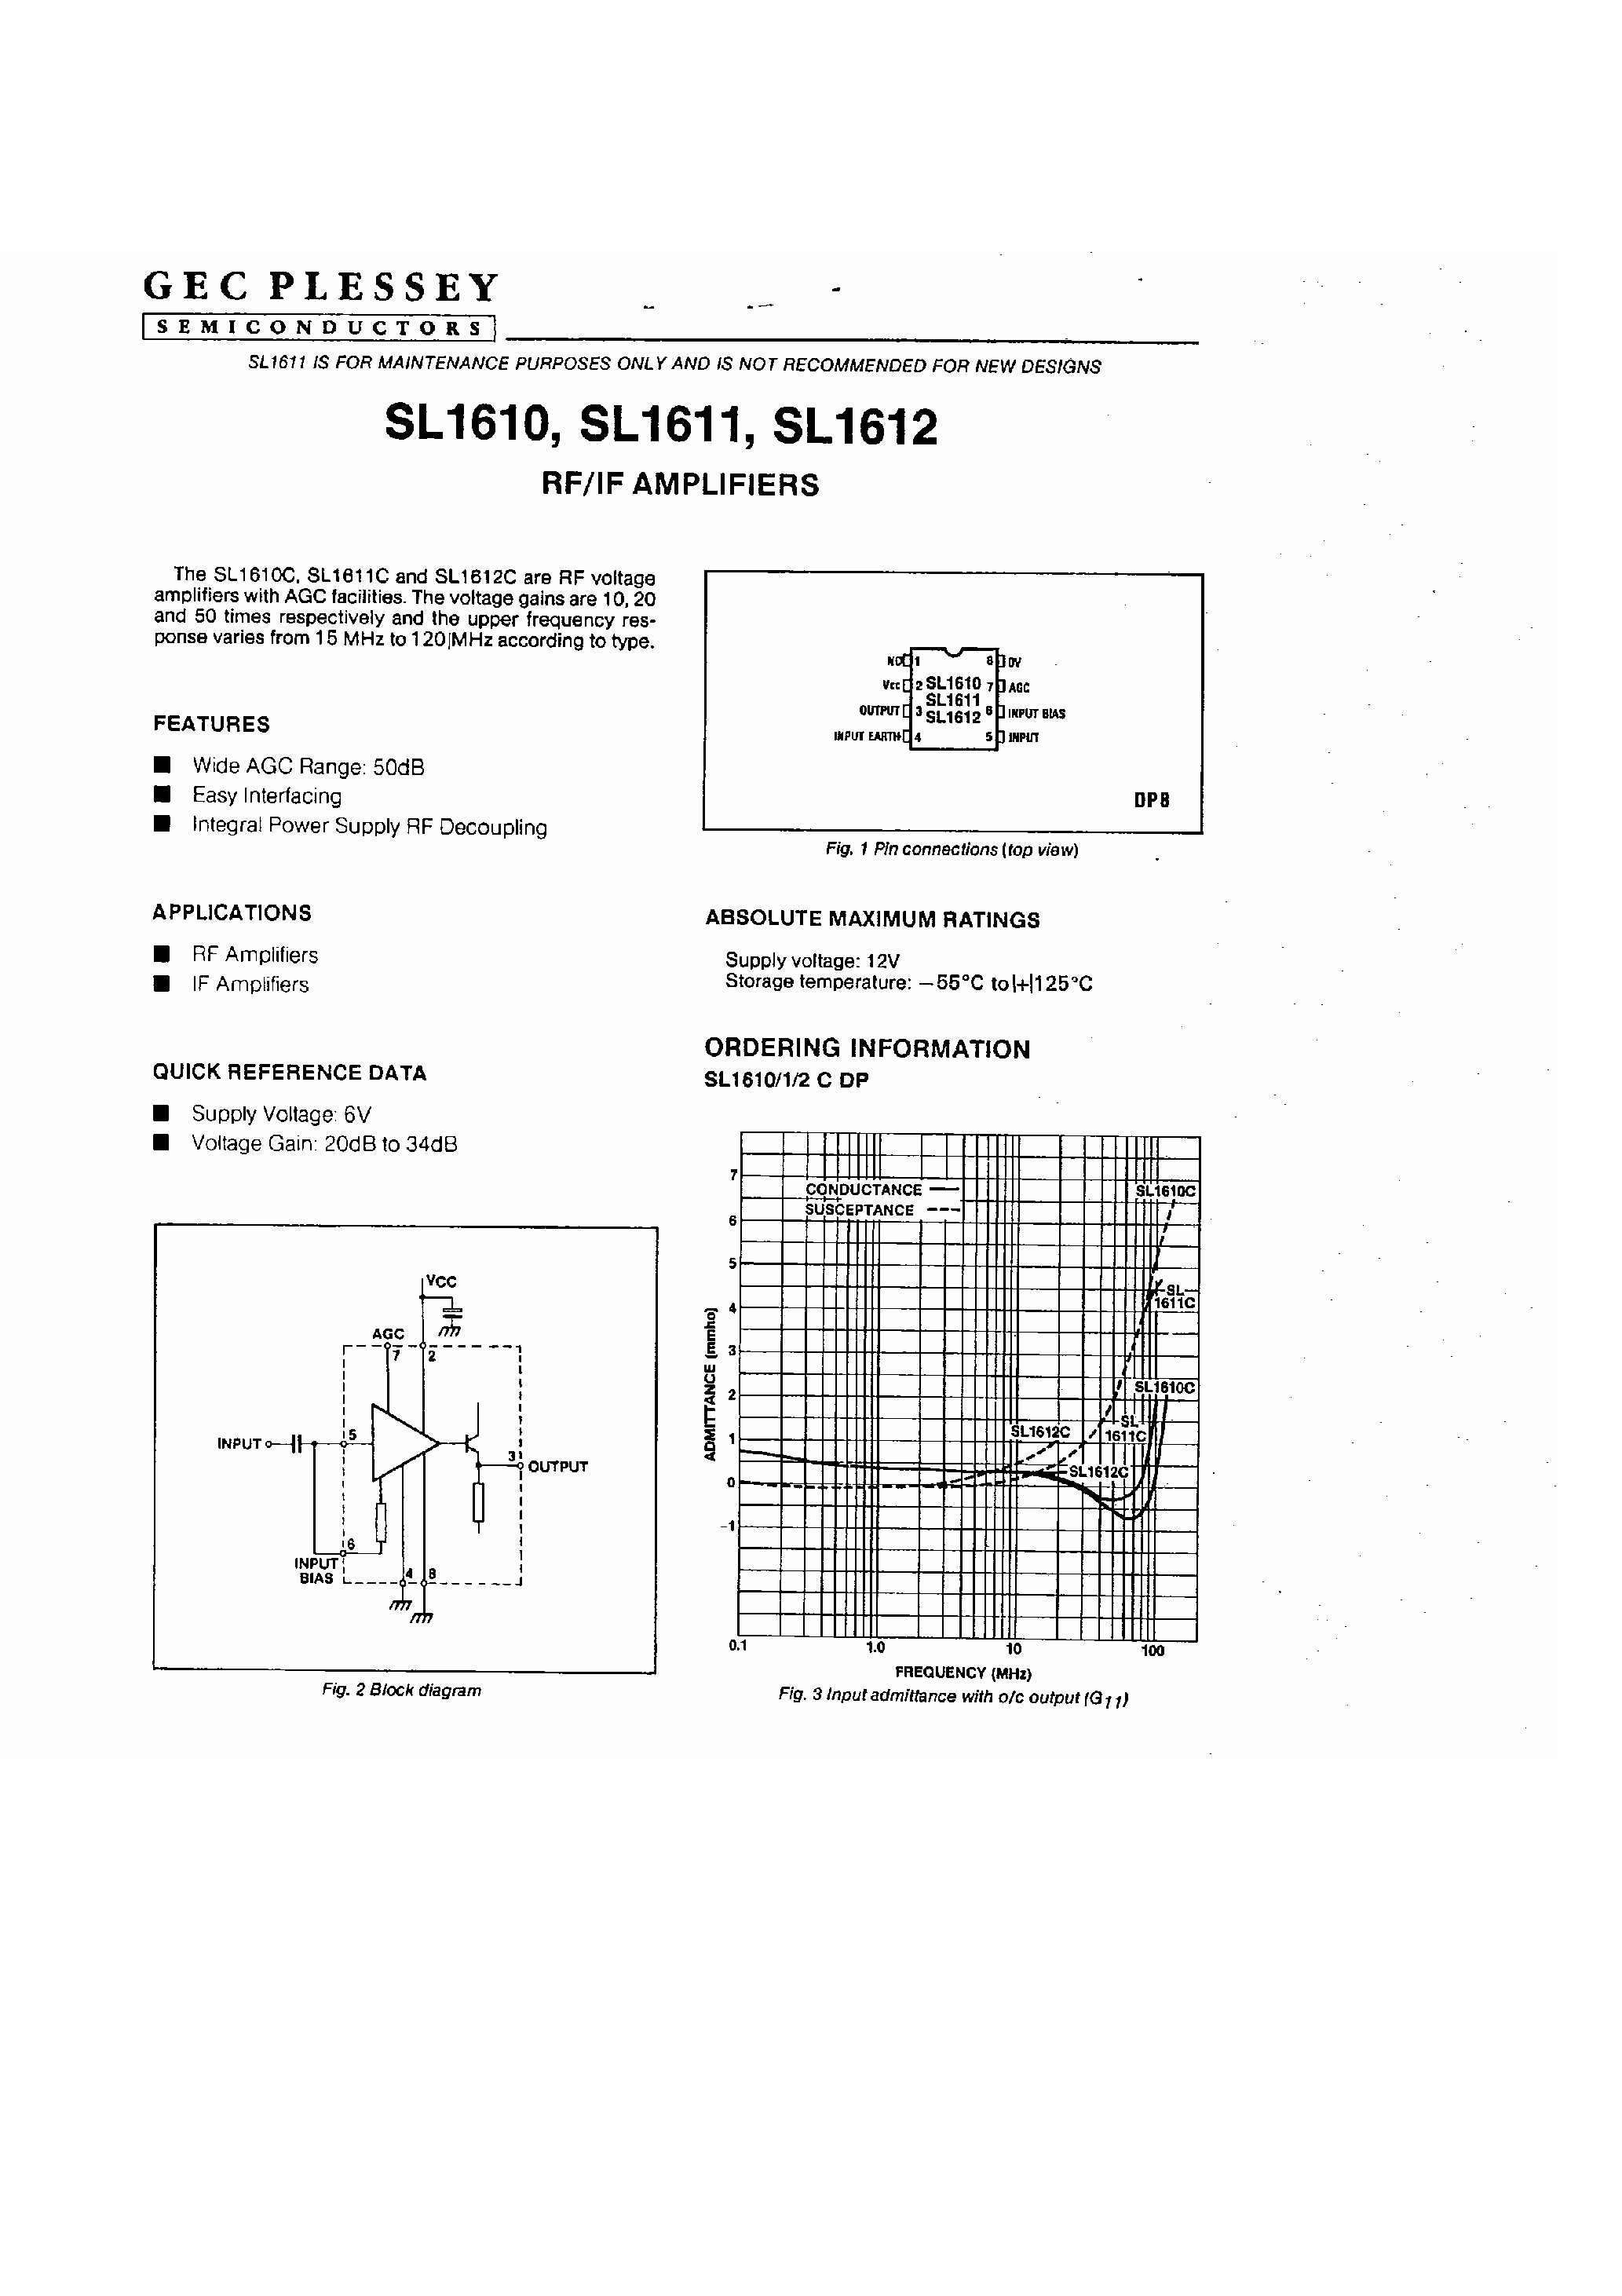 Даташит SL1612 - (SL1611/SL1611) RF / IF Amplifiers страница 1